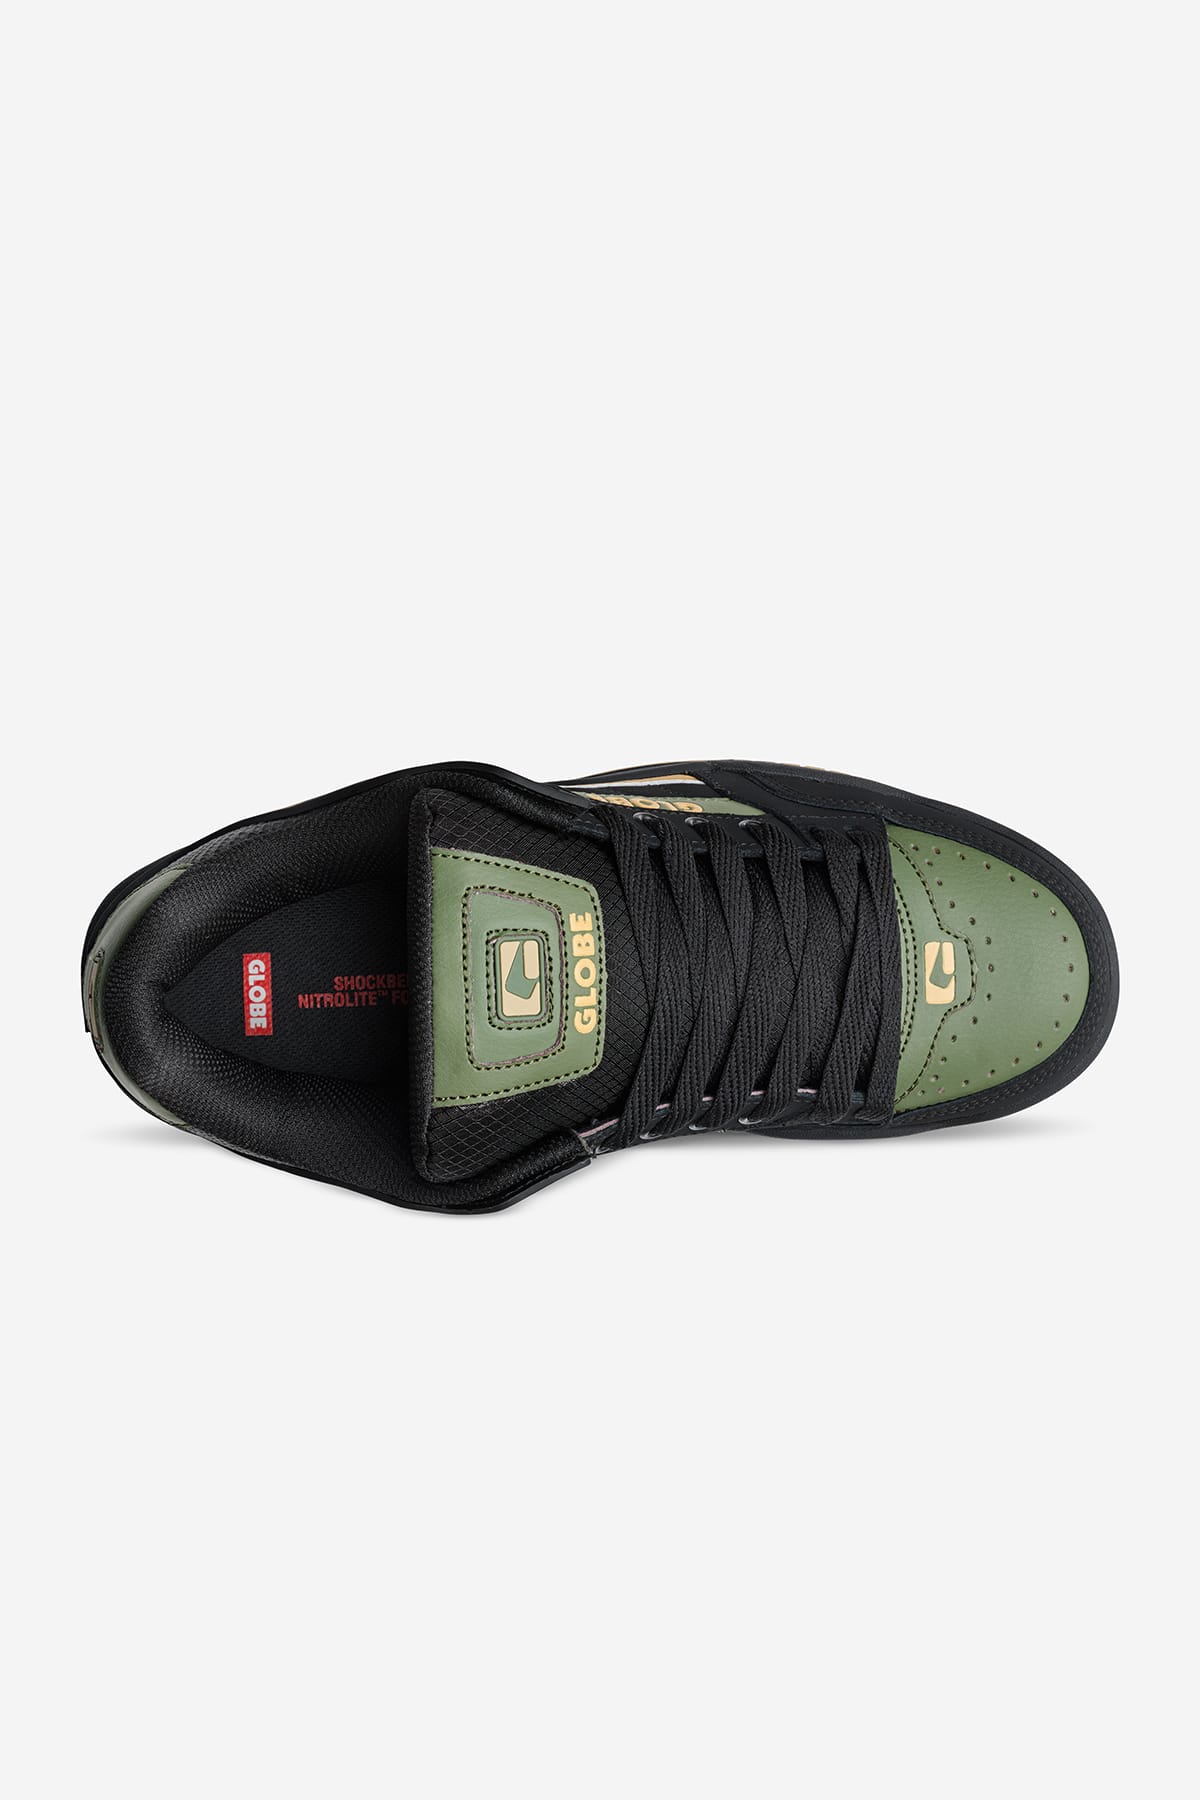 tilt black spruce skate shoes